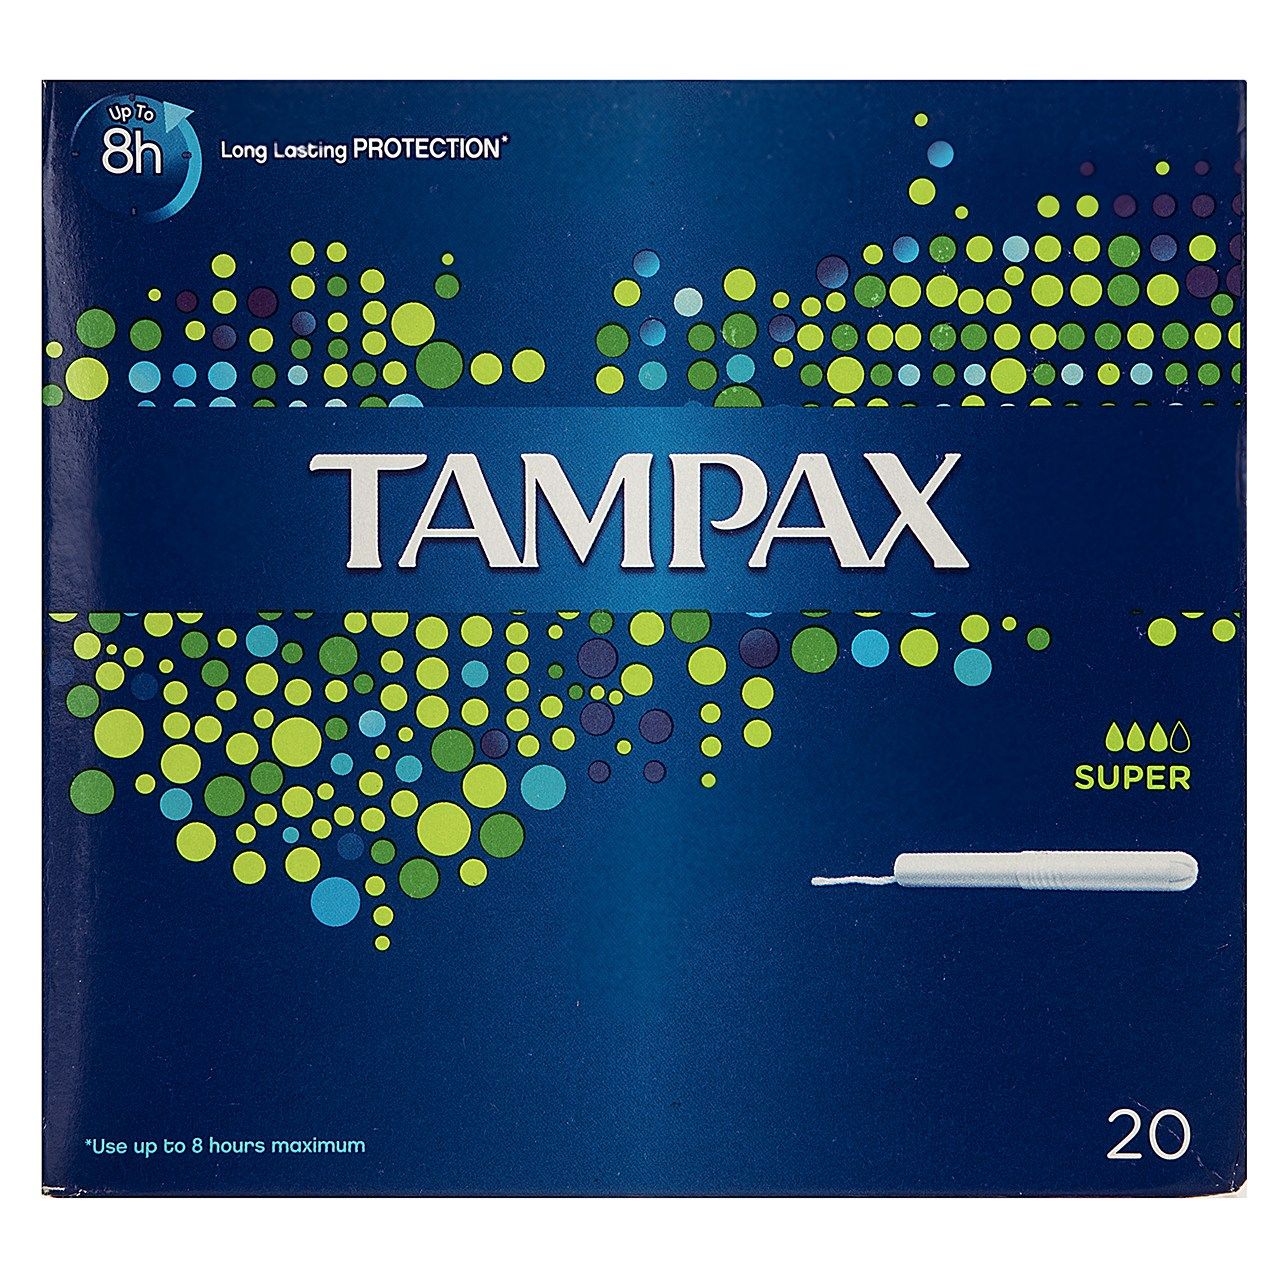 تامپون تامپکس مدل Compak Super بسته 20 عددی -  - 1